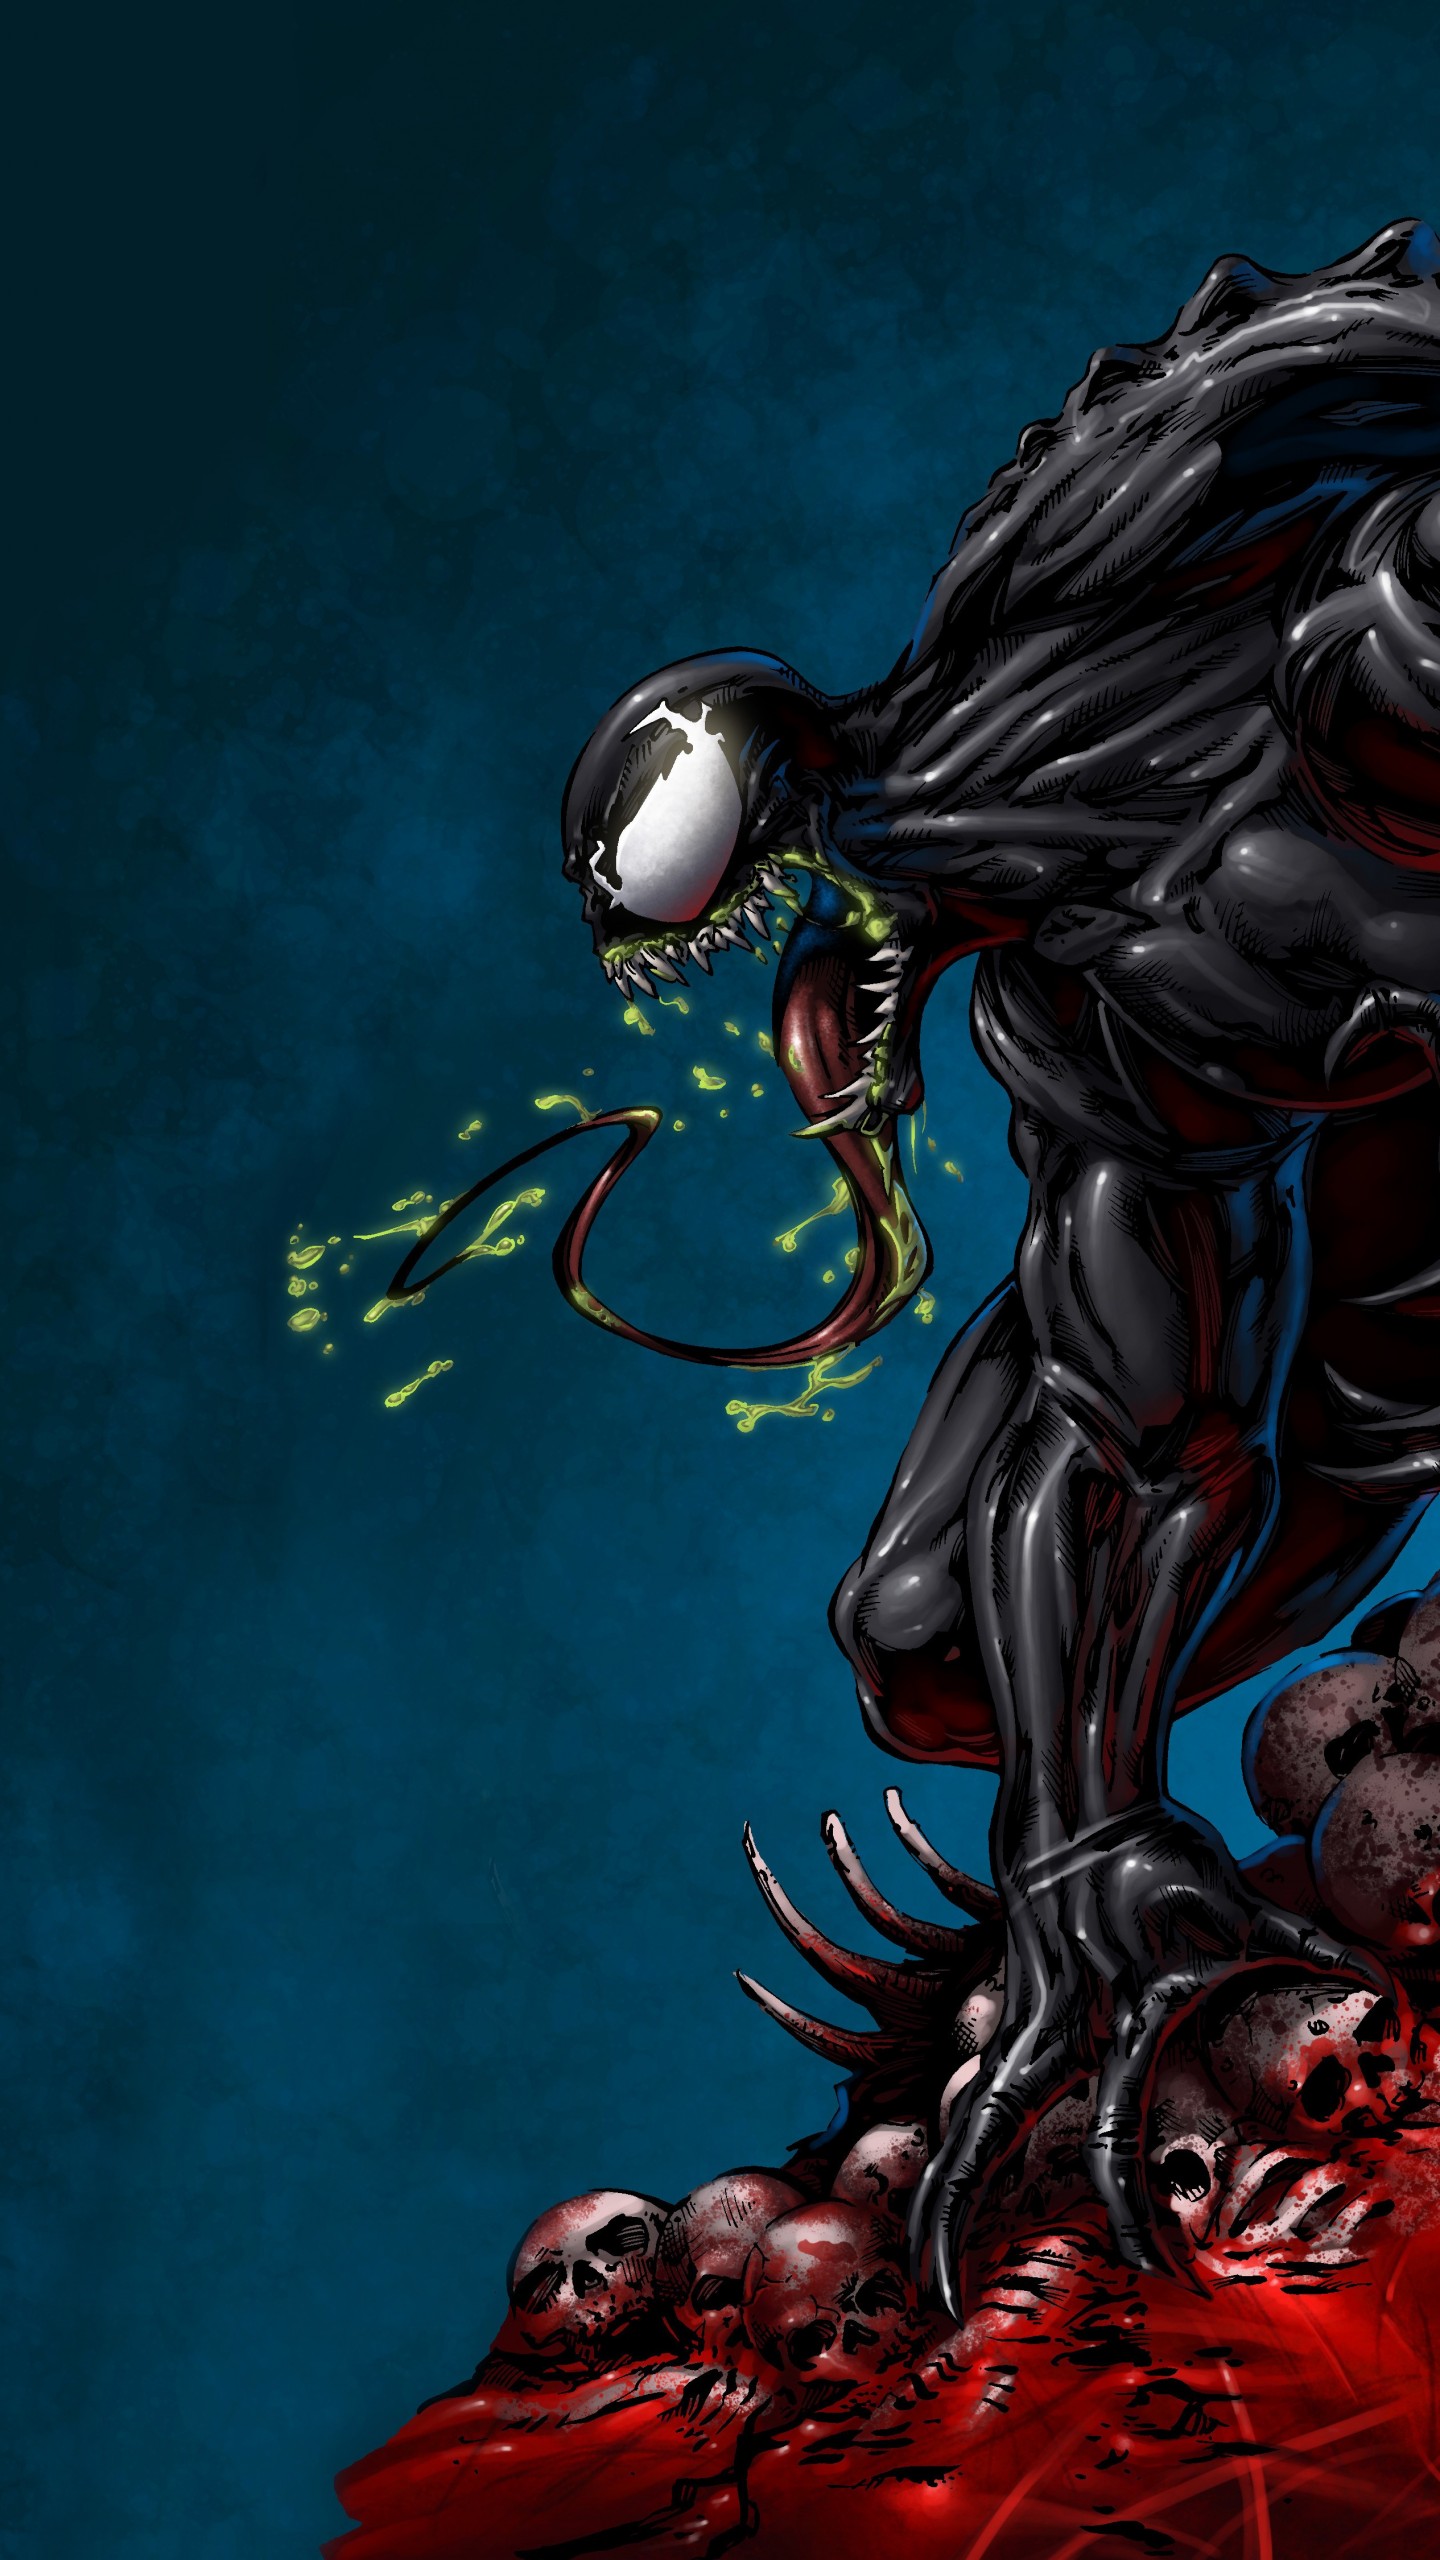 marvel venom wallpaper,personaje de ficción,cg artwork,ilustración,veneno,demonio